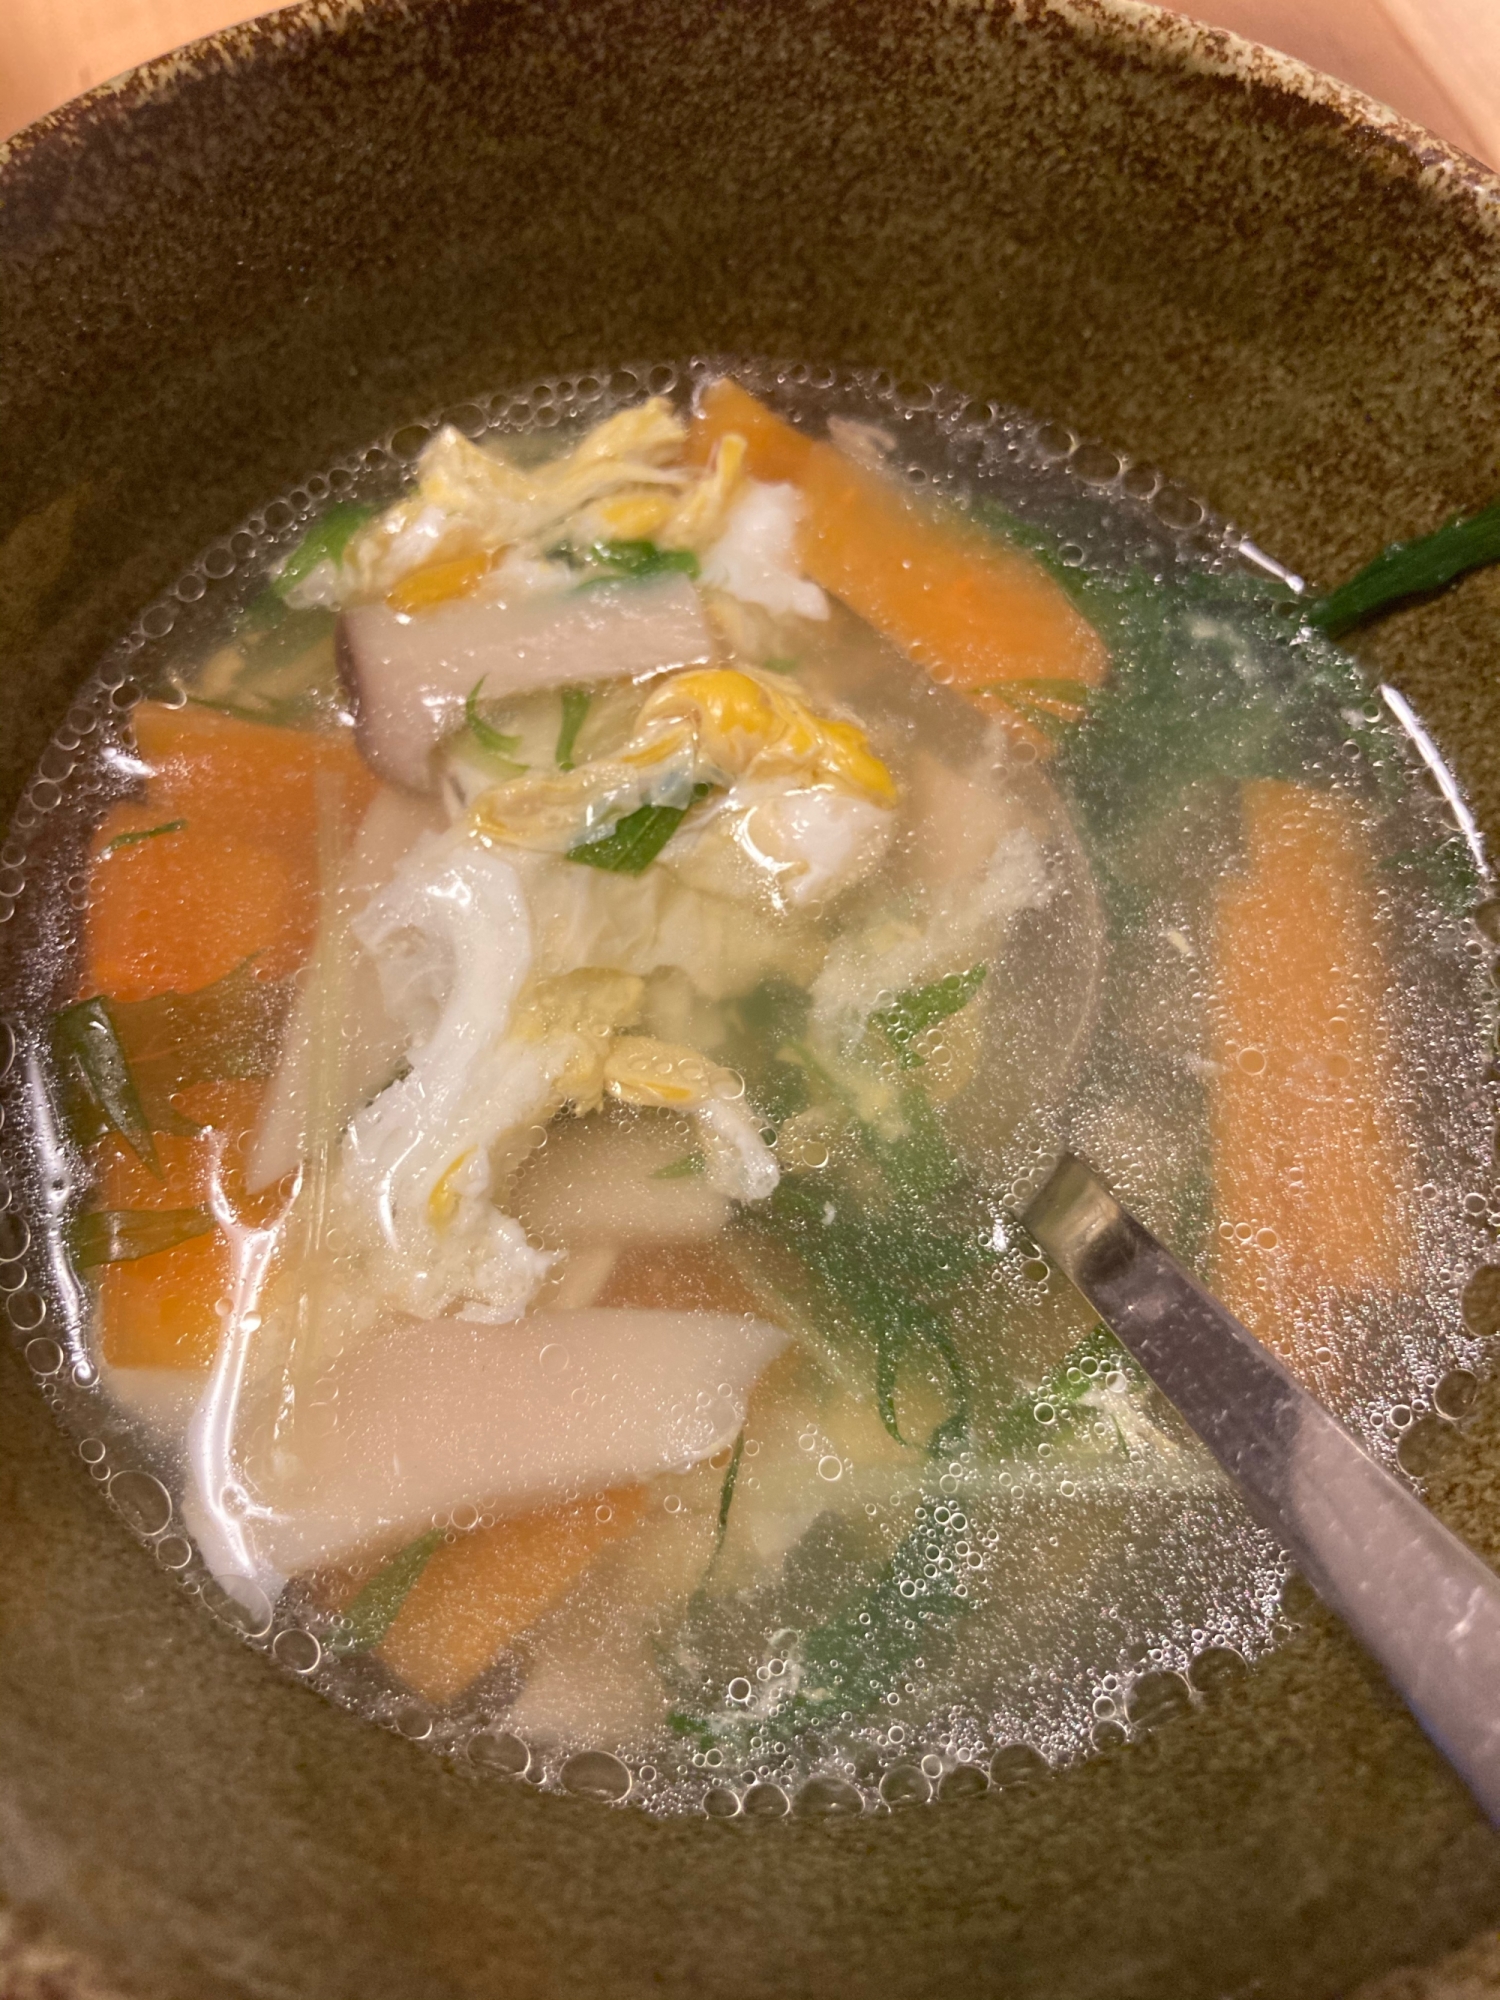 野菜たっぷり中華スープ